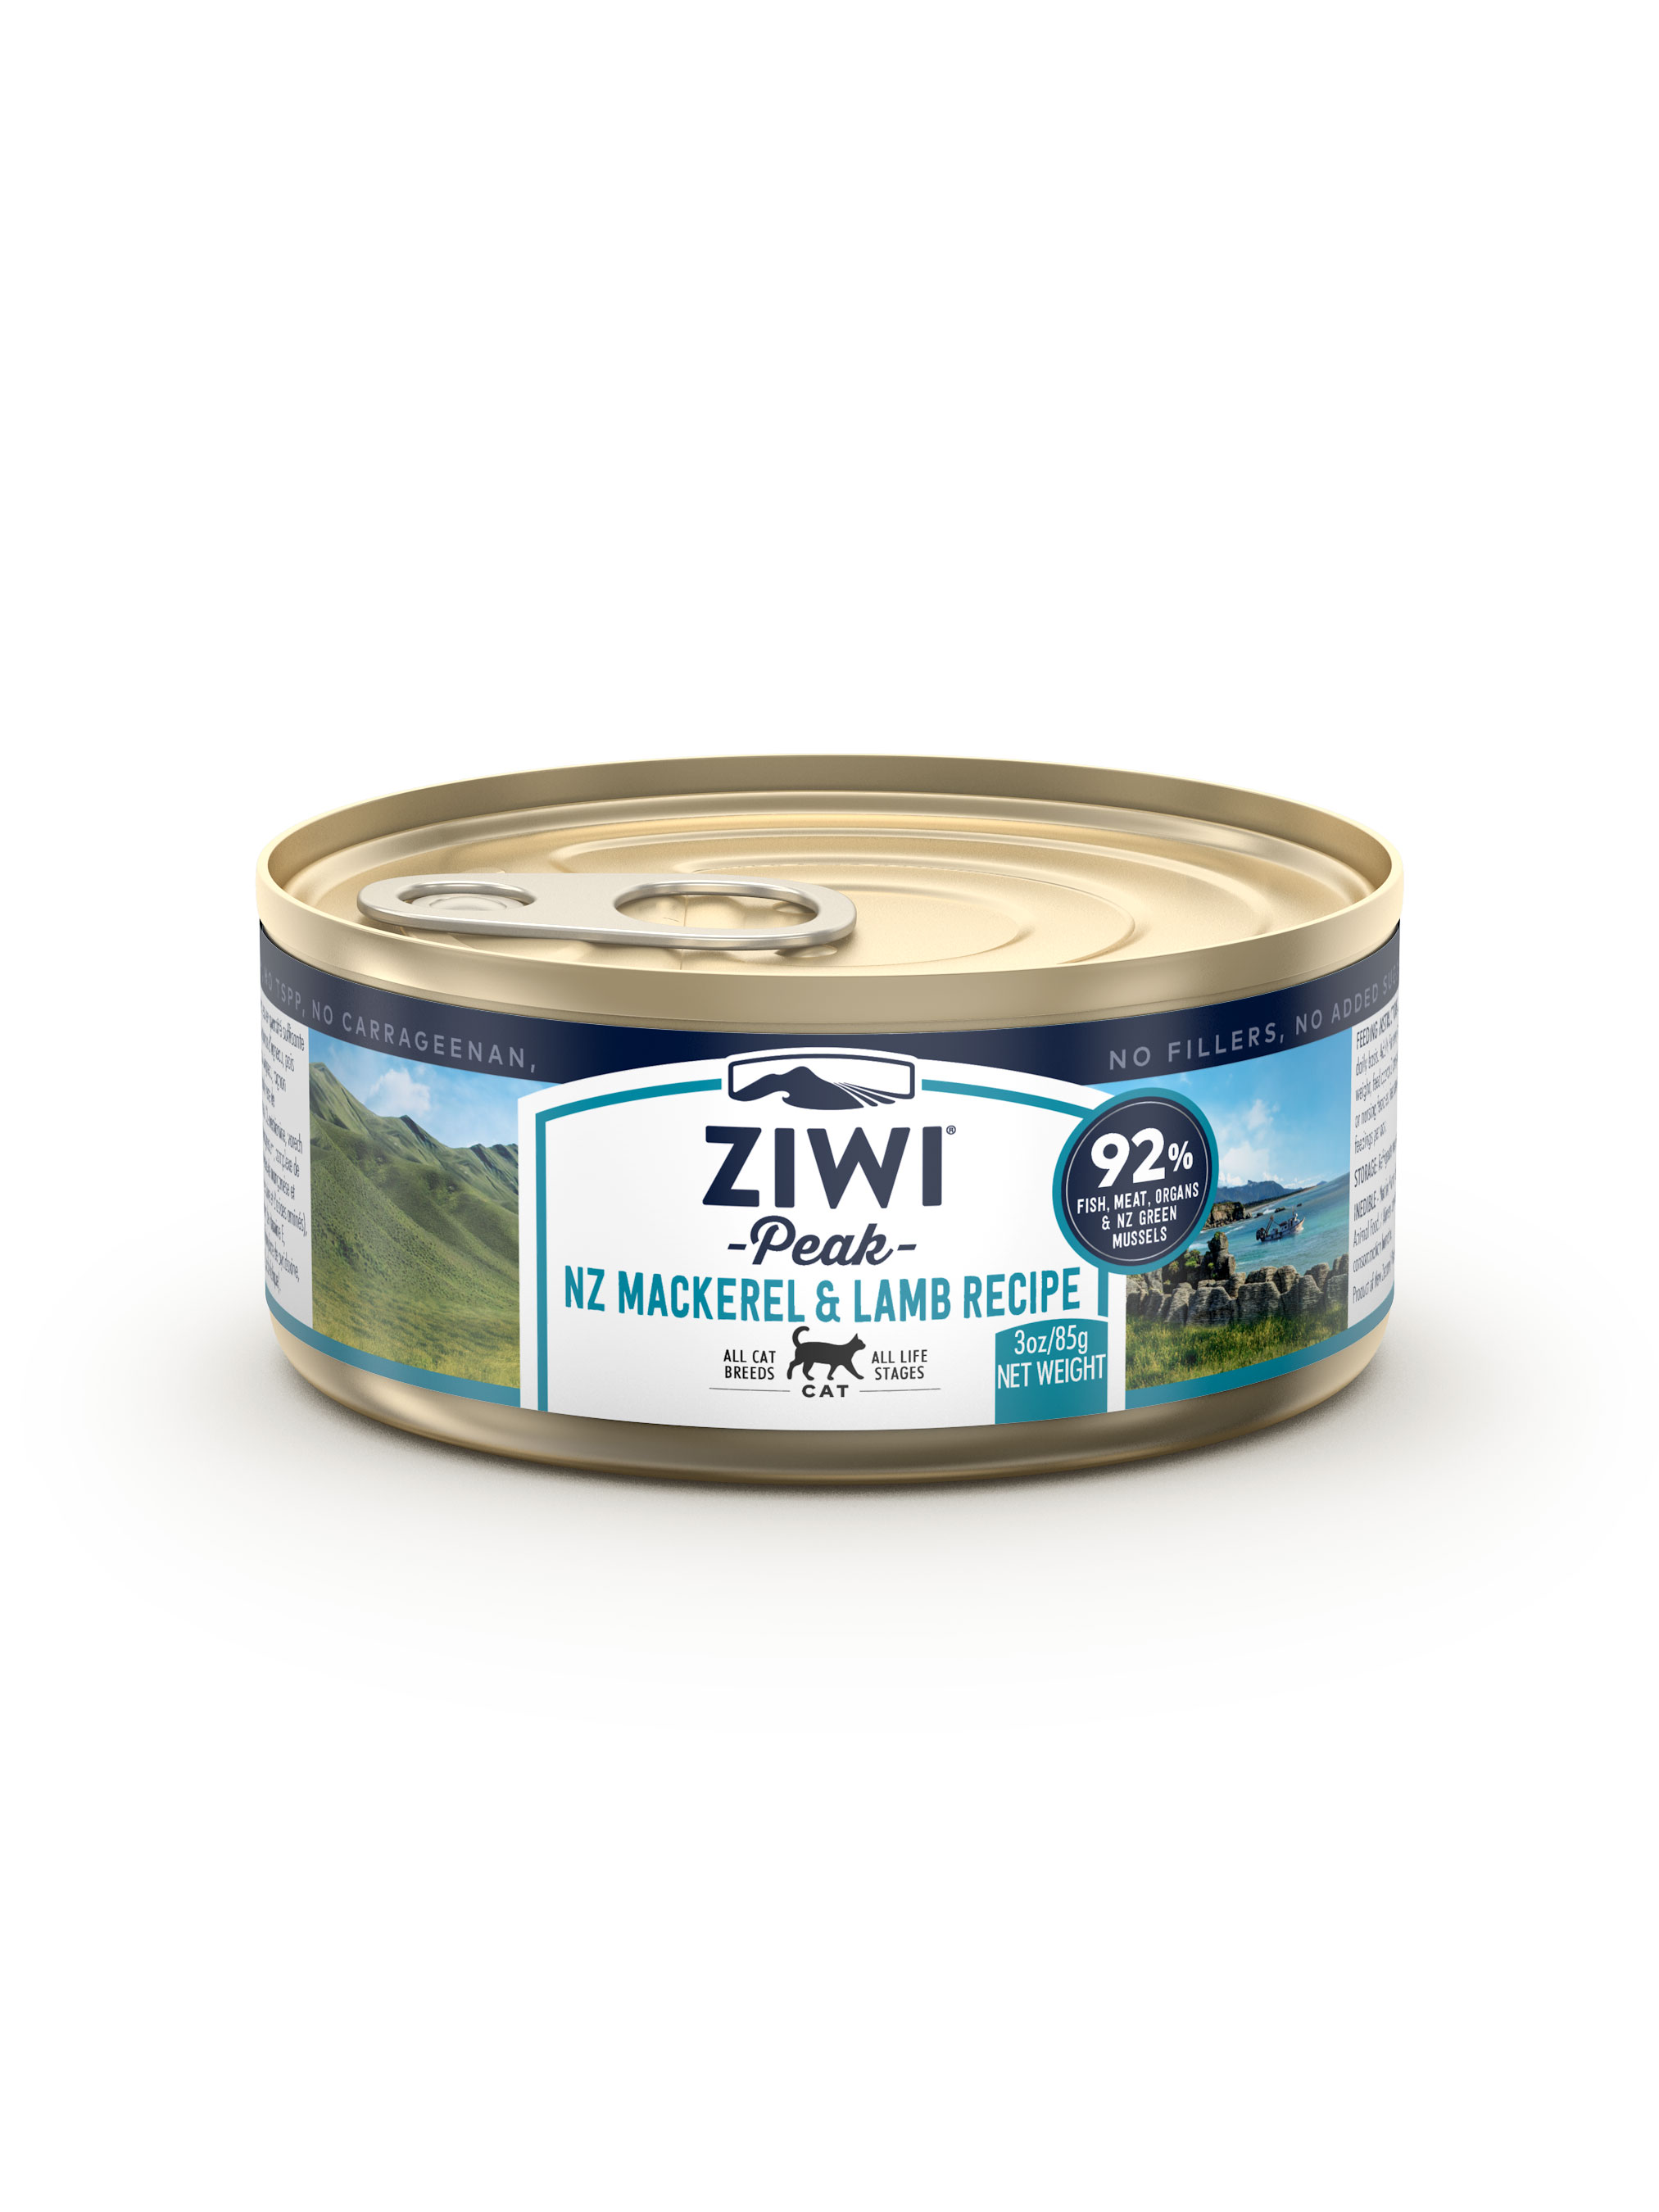 ziwi peak キャット缶 185g 16個セット ペット用品 ペットフード